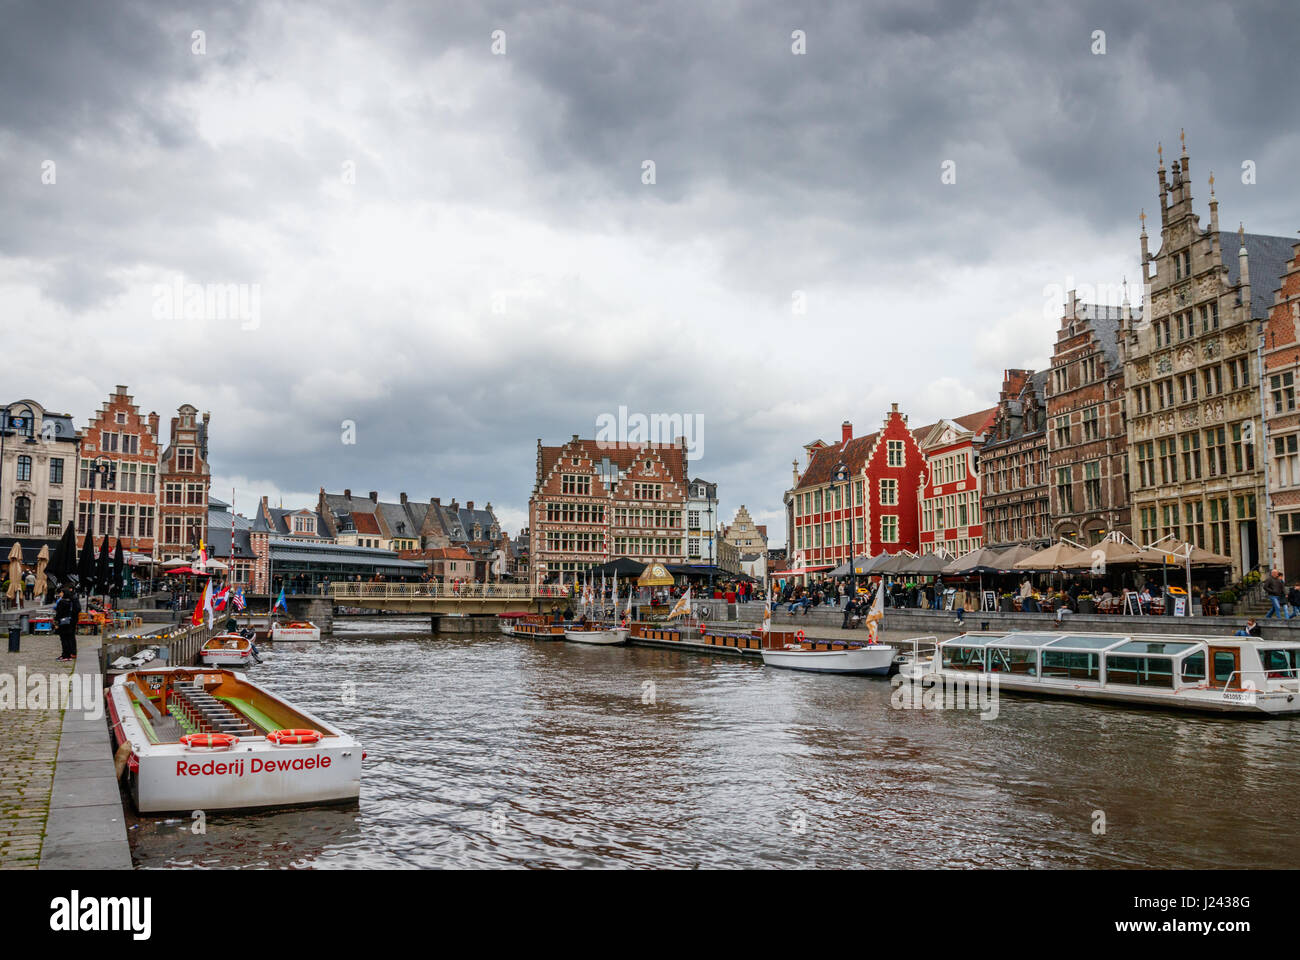 Ansicht der Graslei (Gras Quay) und der Korenlei (Mais Quay) mit mittelalterlichen Gebäuden, touristischen Boote und nicht identifizierten Touristen an einem bewölkten Tag. Gent, Belgien Stockfoto